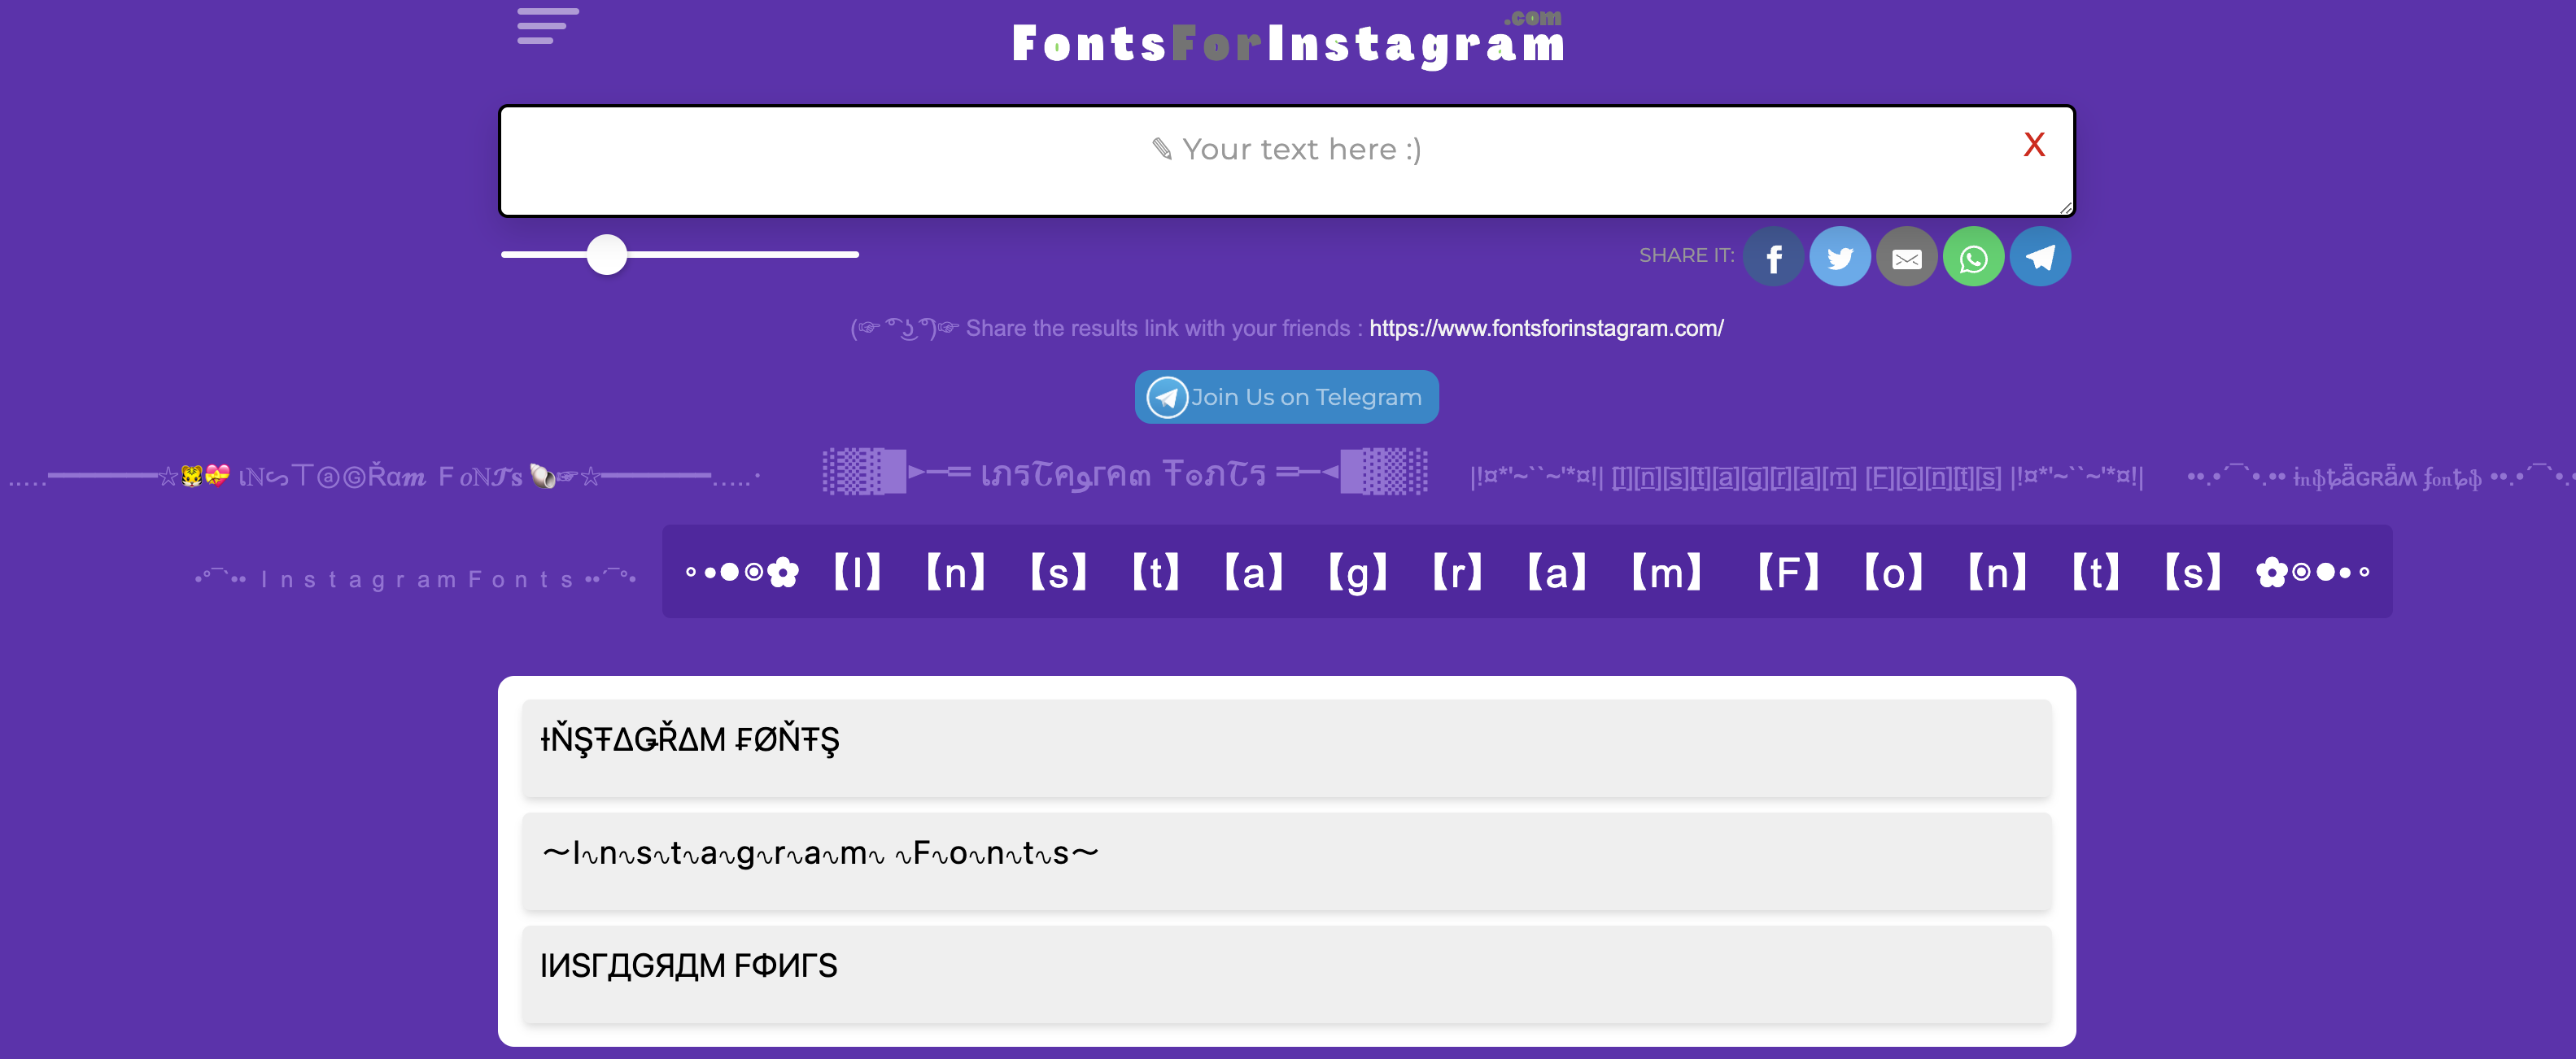 O site FontsforInstagram permite que o usuário escolha seu estilo preferido de letras para personalizar seu perfil.